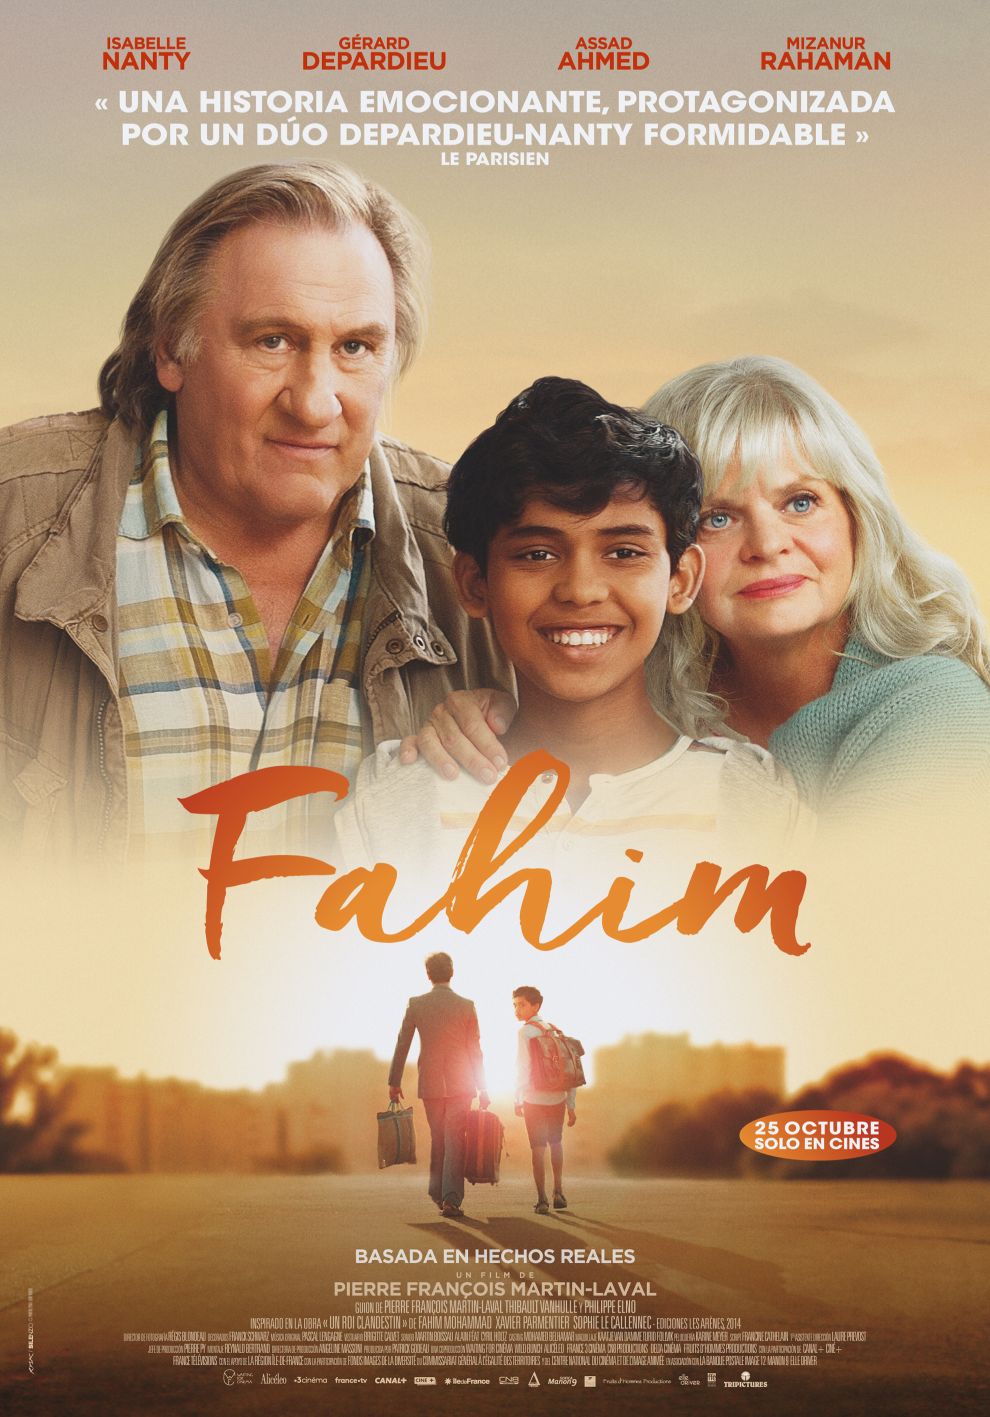 'Fahim' se estrenará el próximo 25 de octubre